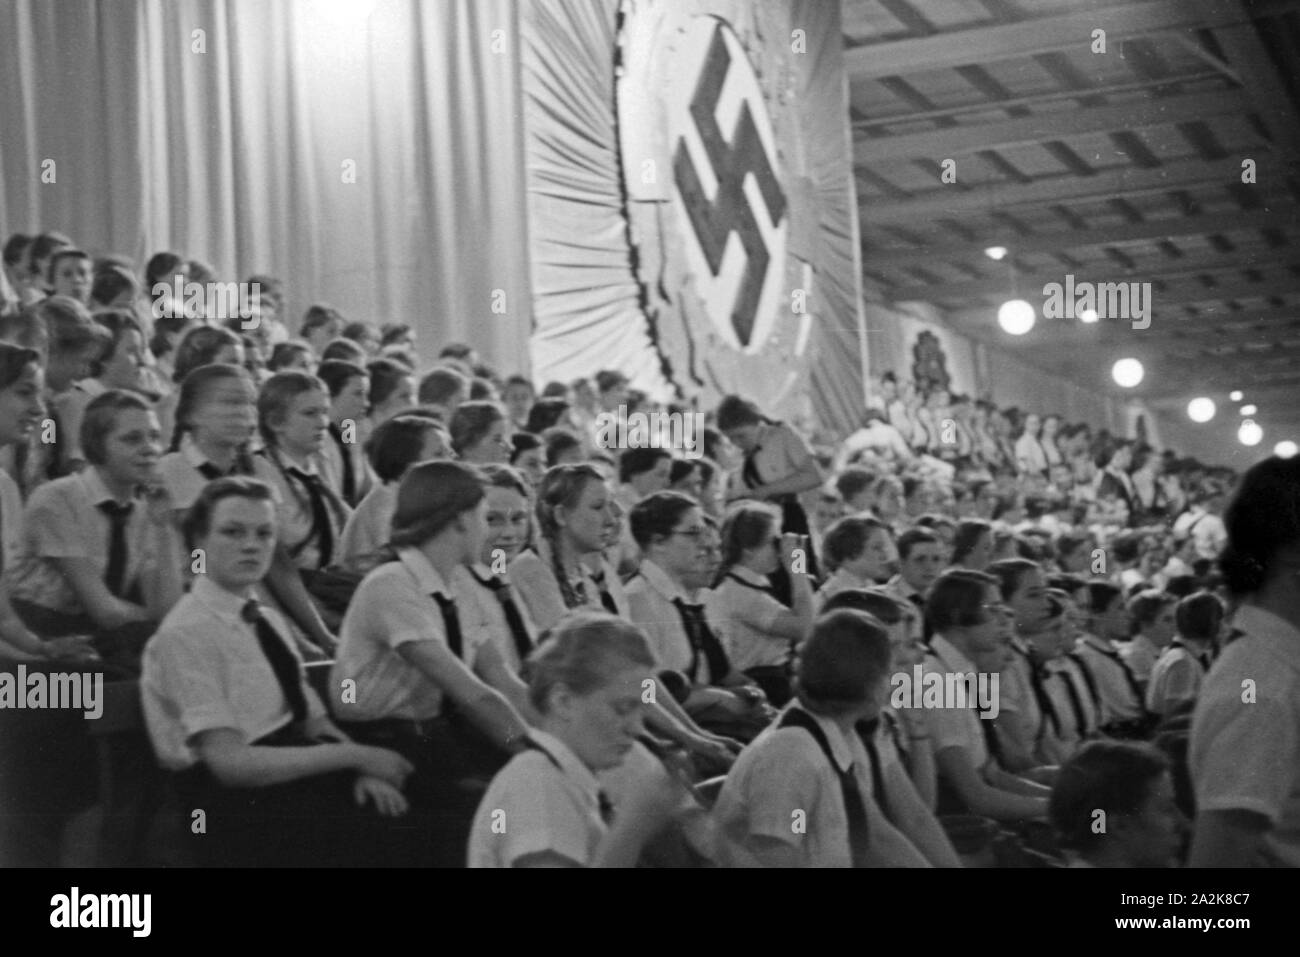 BdM-Mädchen bei einer Parteiveranstaltung der NSDAP und HJ 1936 Reichssieger, Deutschland 1930er Jahre. BdM-Mädchen an einer Nsdap-Veranstaltung für die Hitlerjugend Reichssieger Wettbewerb 1936, in Deutschland 1930. Stockfoto